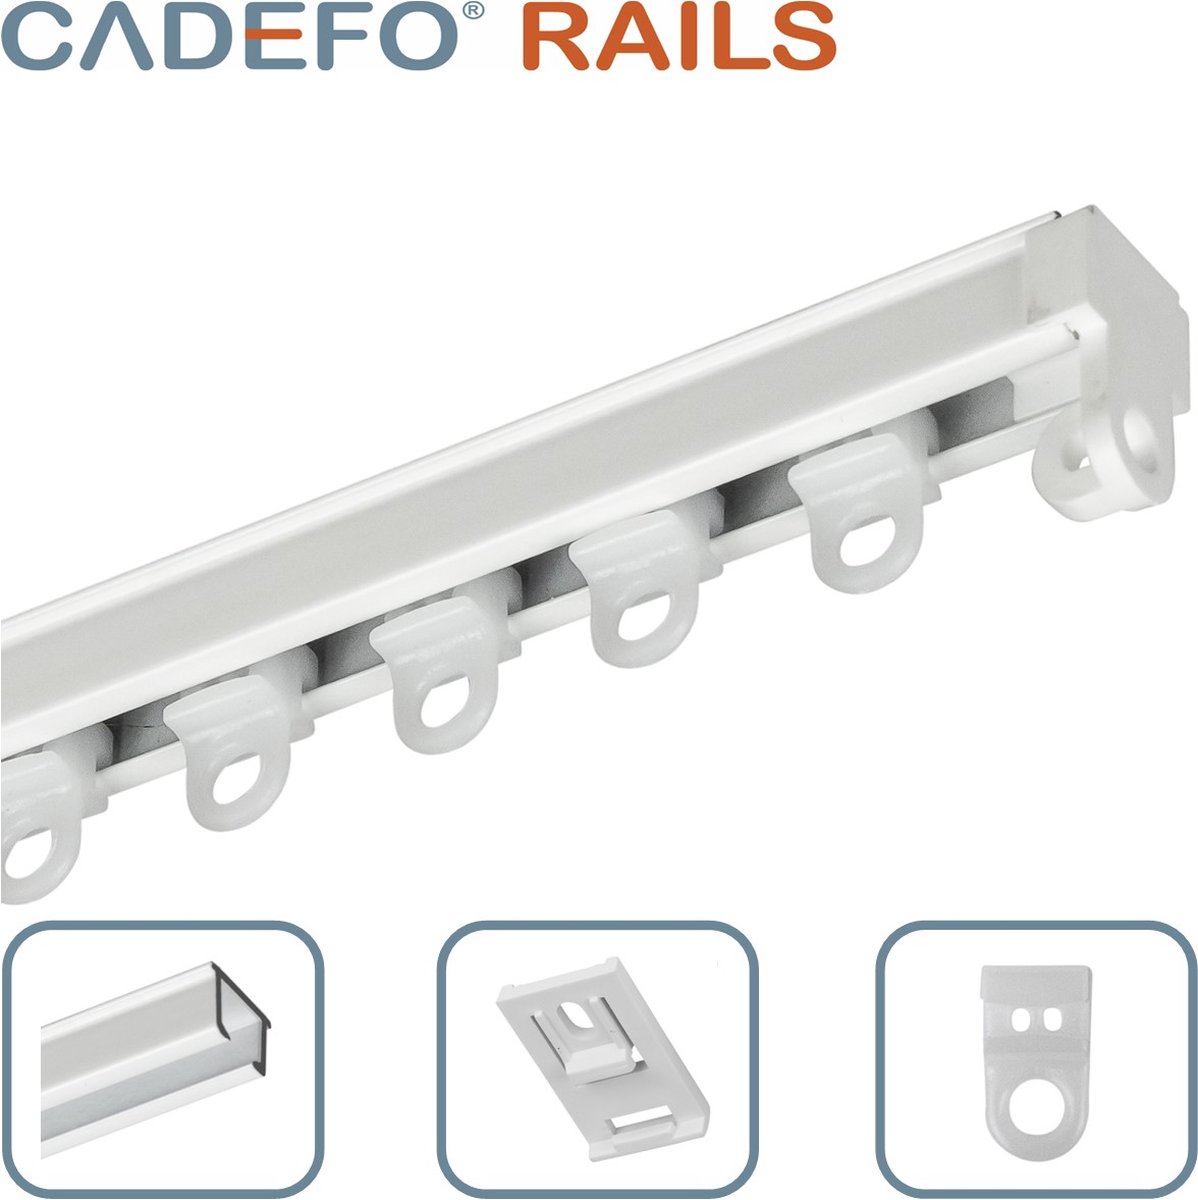 CADEFO RAILS (451 - 500 cm) Gordijnrails - Compleet op maat! - UIT 1 STUK - Leverbaar tot 6 meter - Plafondbevestiging - Lengte 488 cm